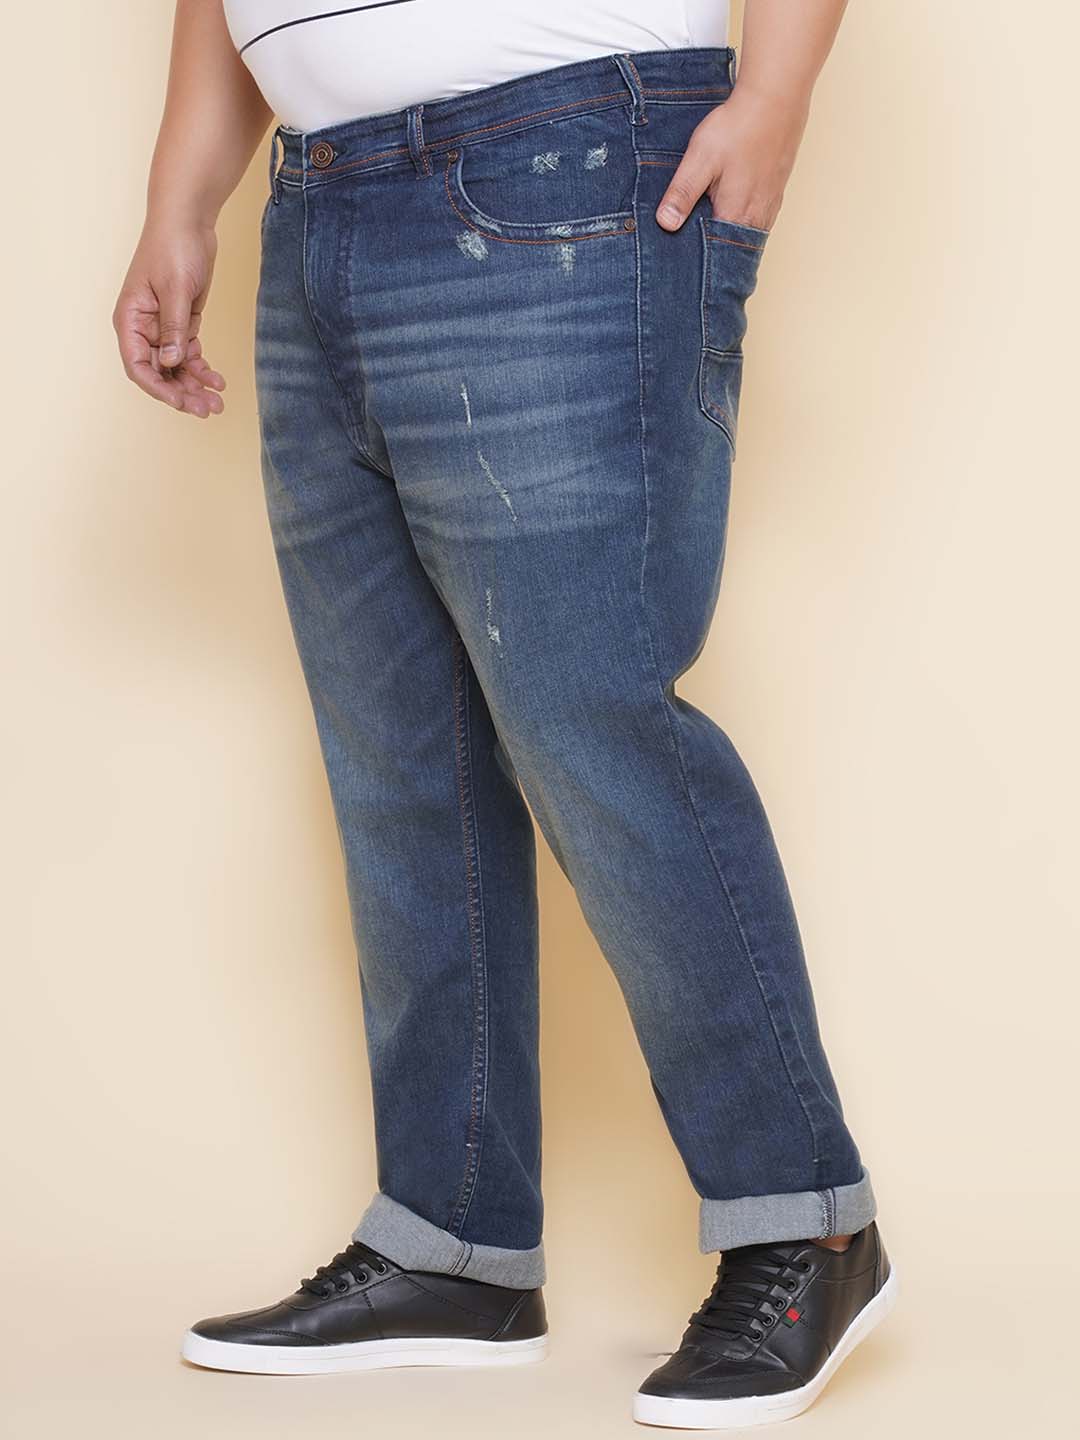 bottomwear/jeans/EJPJ25138/ejpj25138-4.jpg